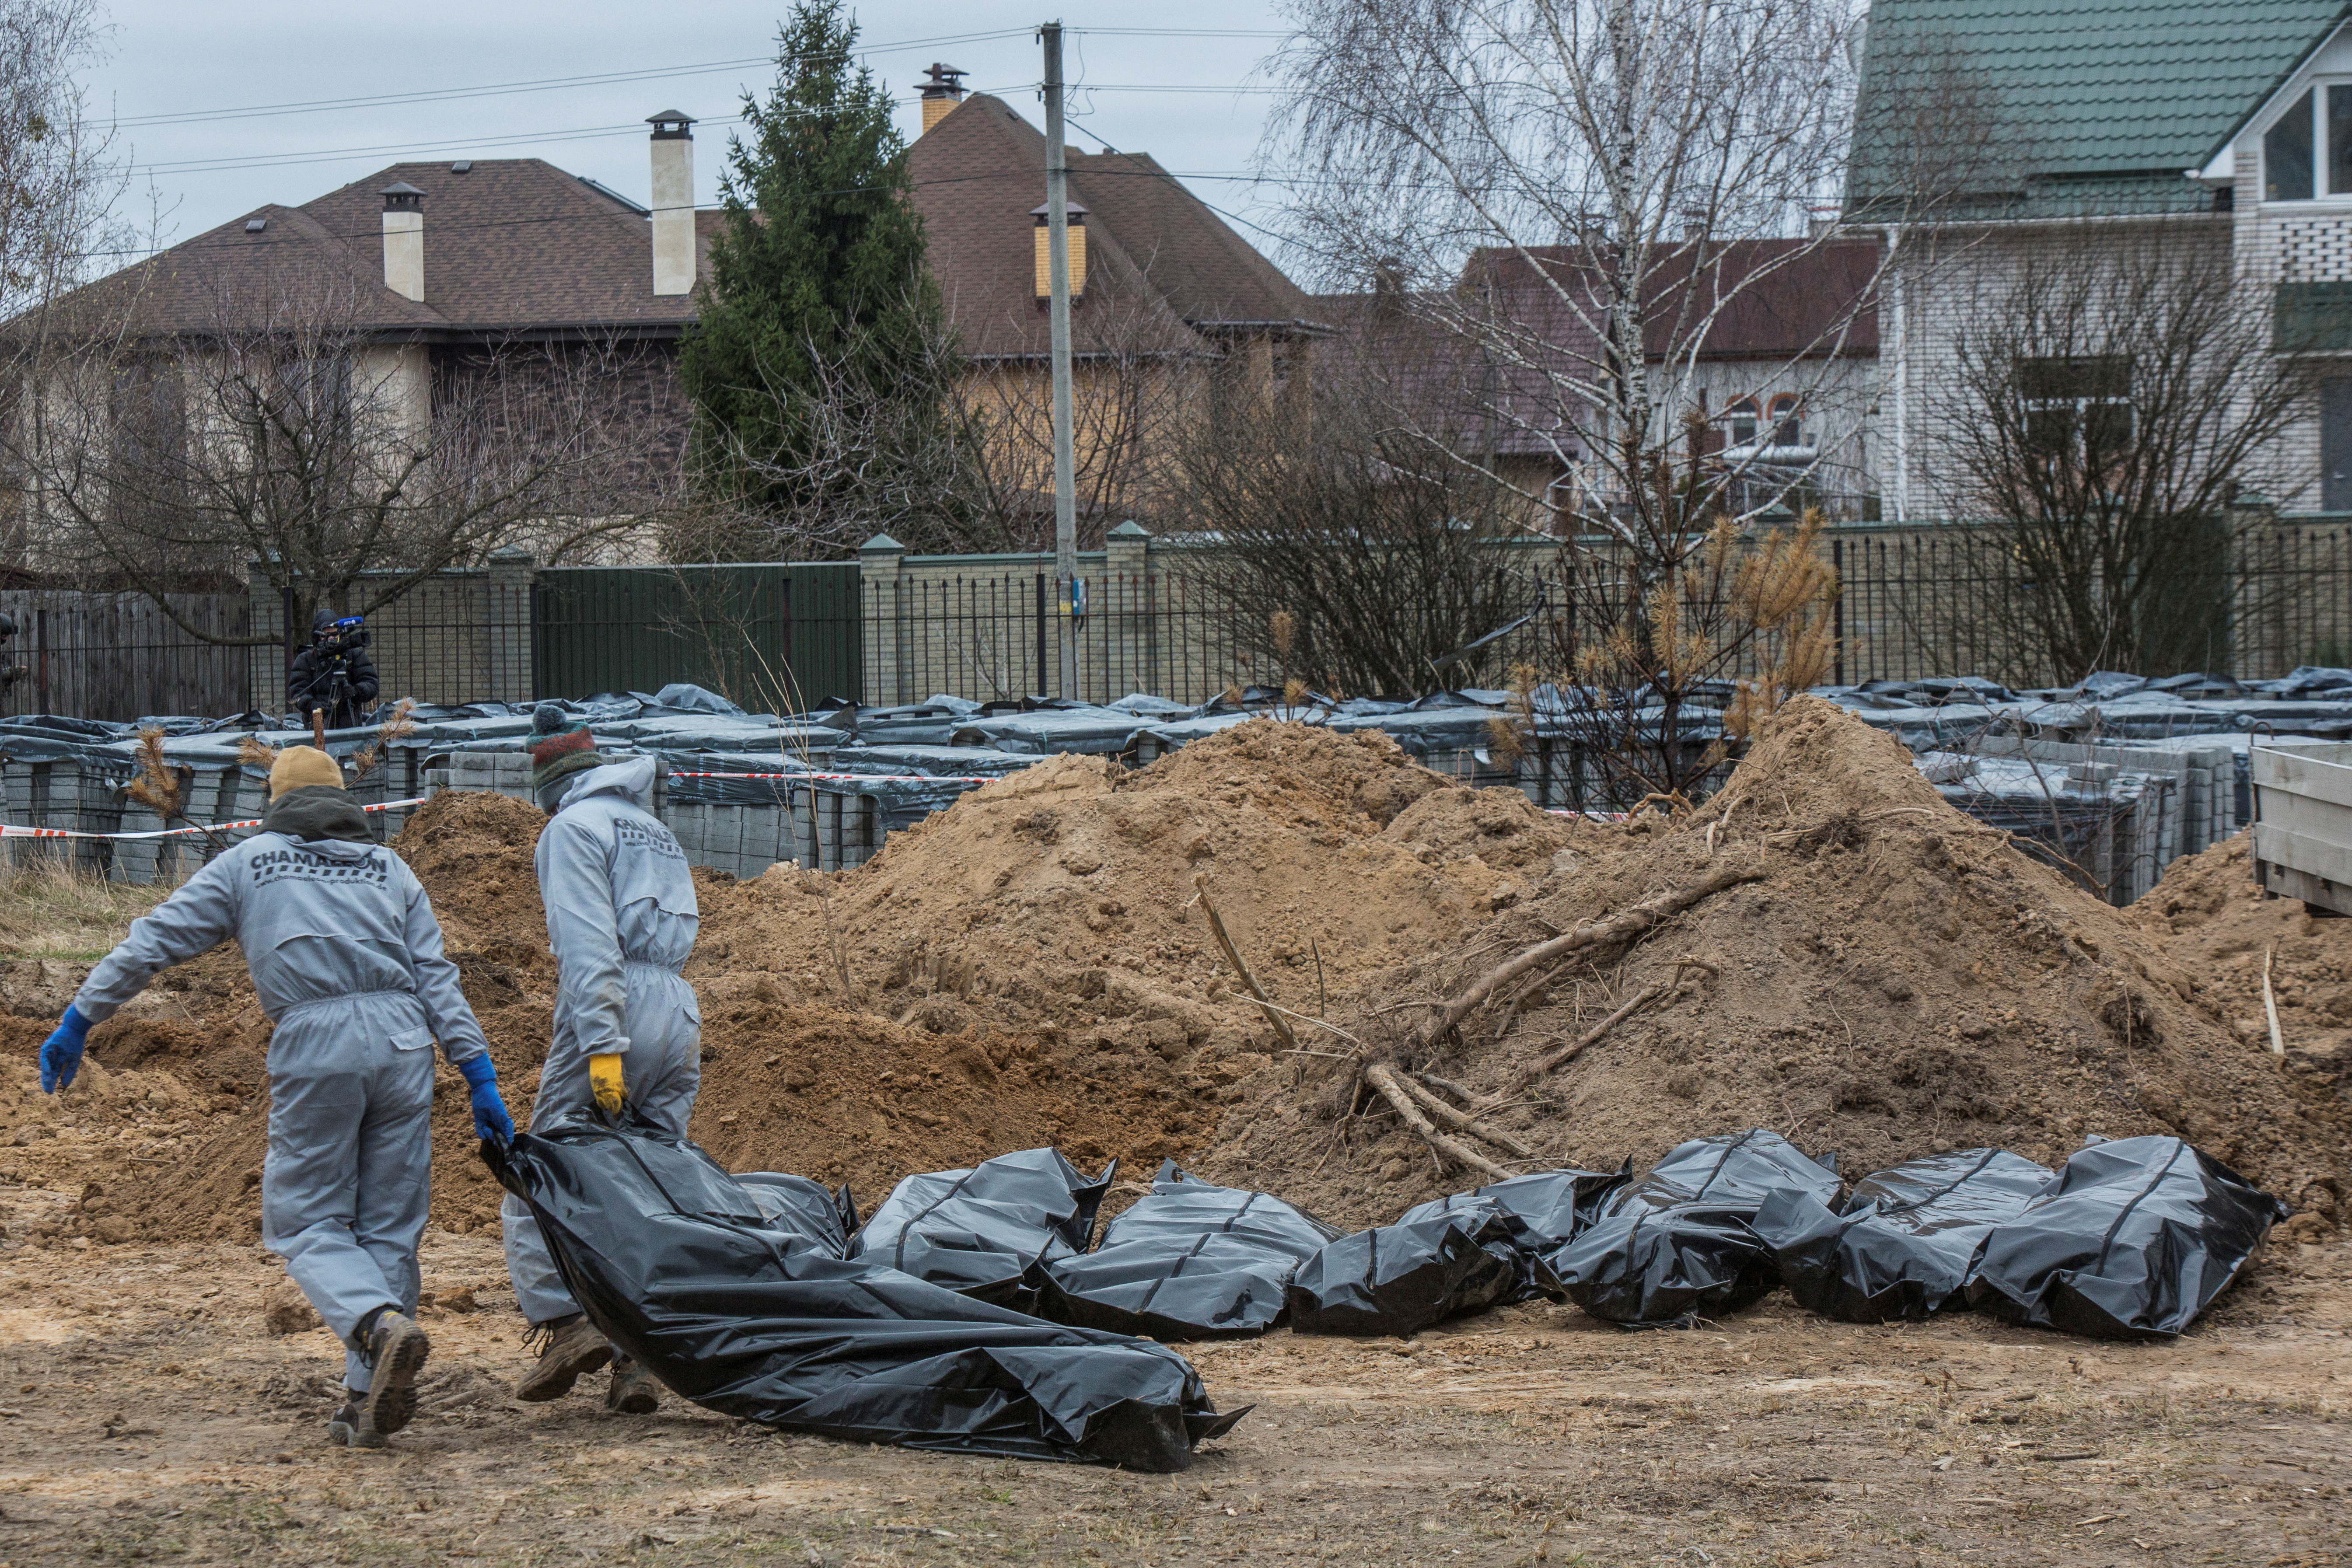 Técnicos forenses sacan el cuerpo de un civil que fue asesinado durante la invasión rusa y luego enterrado y exhumado de una fosa común en la ciudad de Bucha, en las afueras de Kiev, Ucrania, el 13 de abril de 2022. REUTERS/Volodymyr Petrov